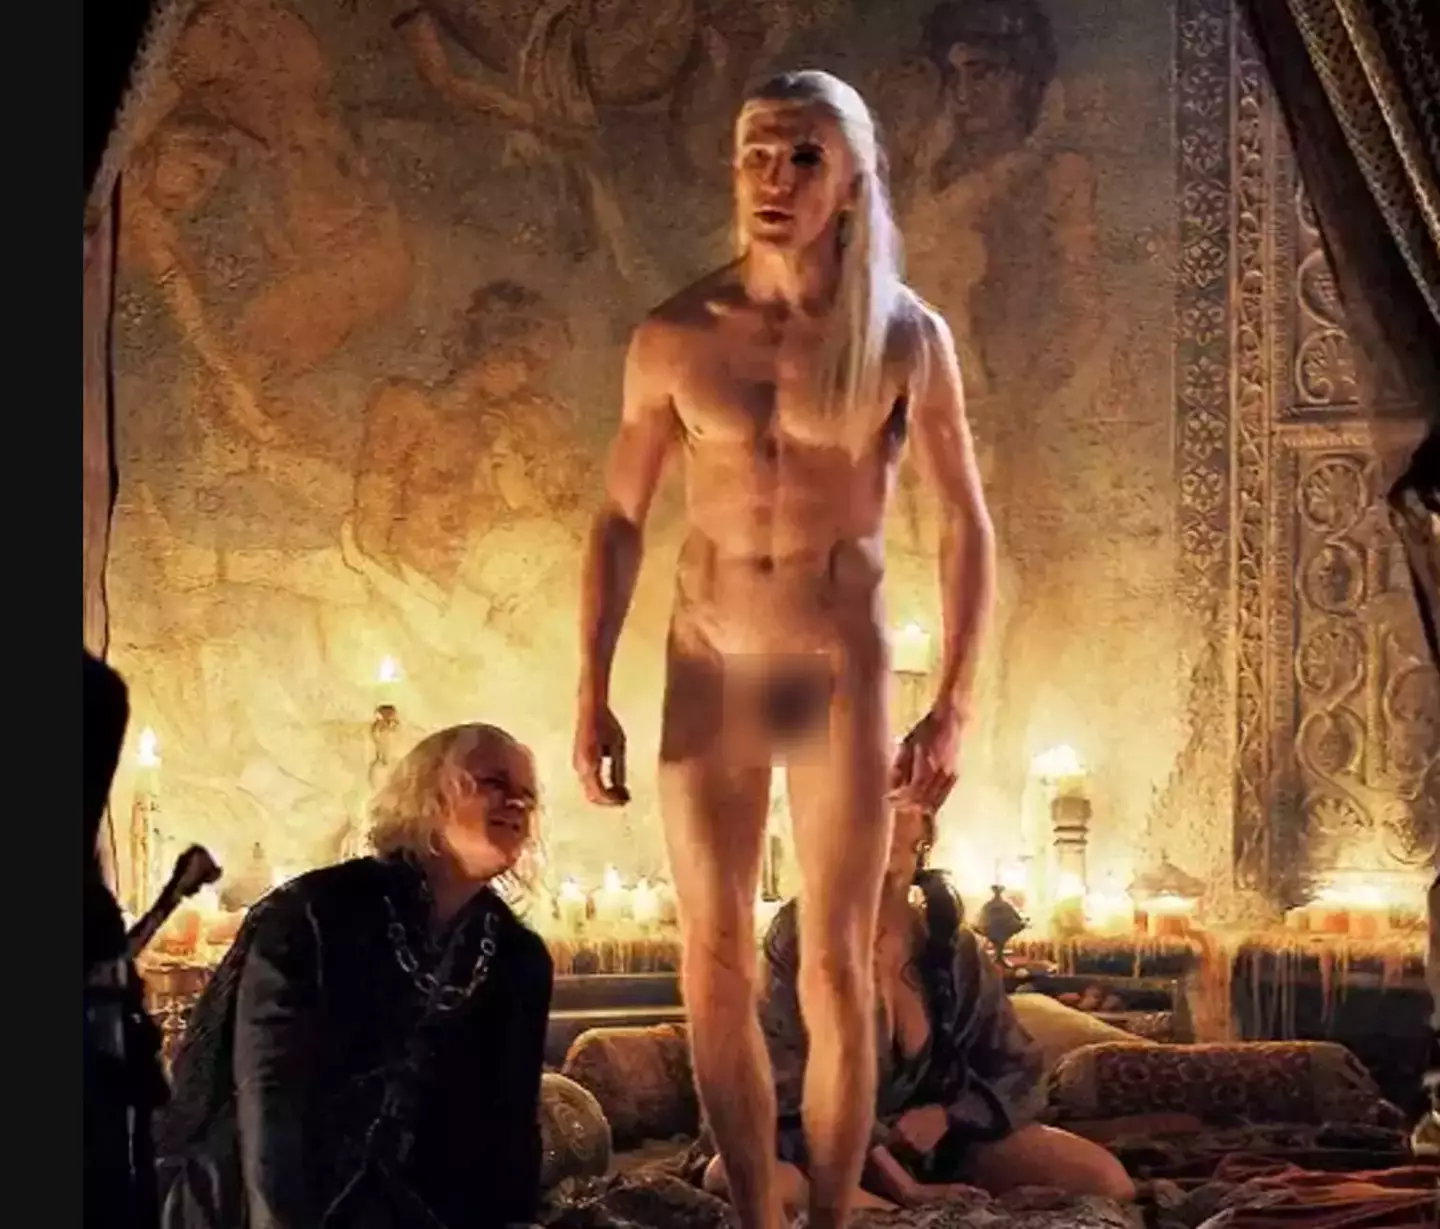 The scene shows Aemond Targaryen (Ewan Mitchell) standing completely naked (HBO)